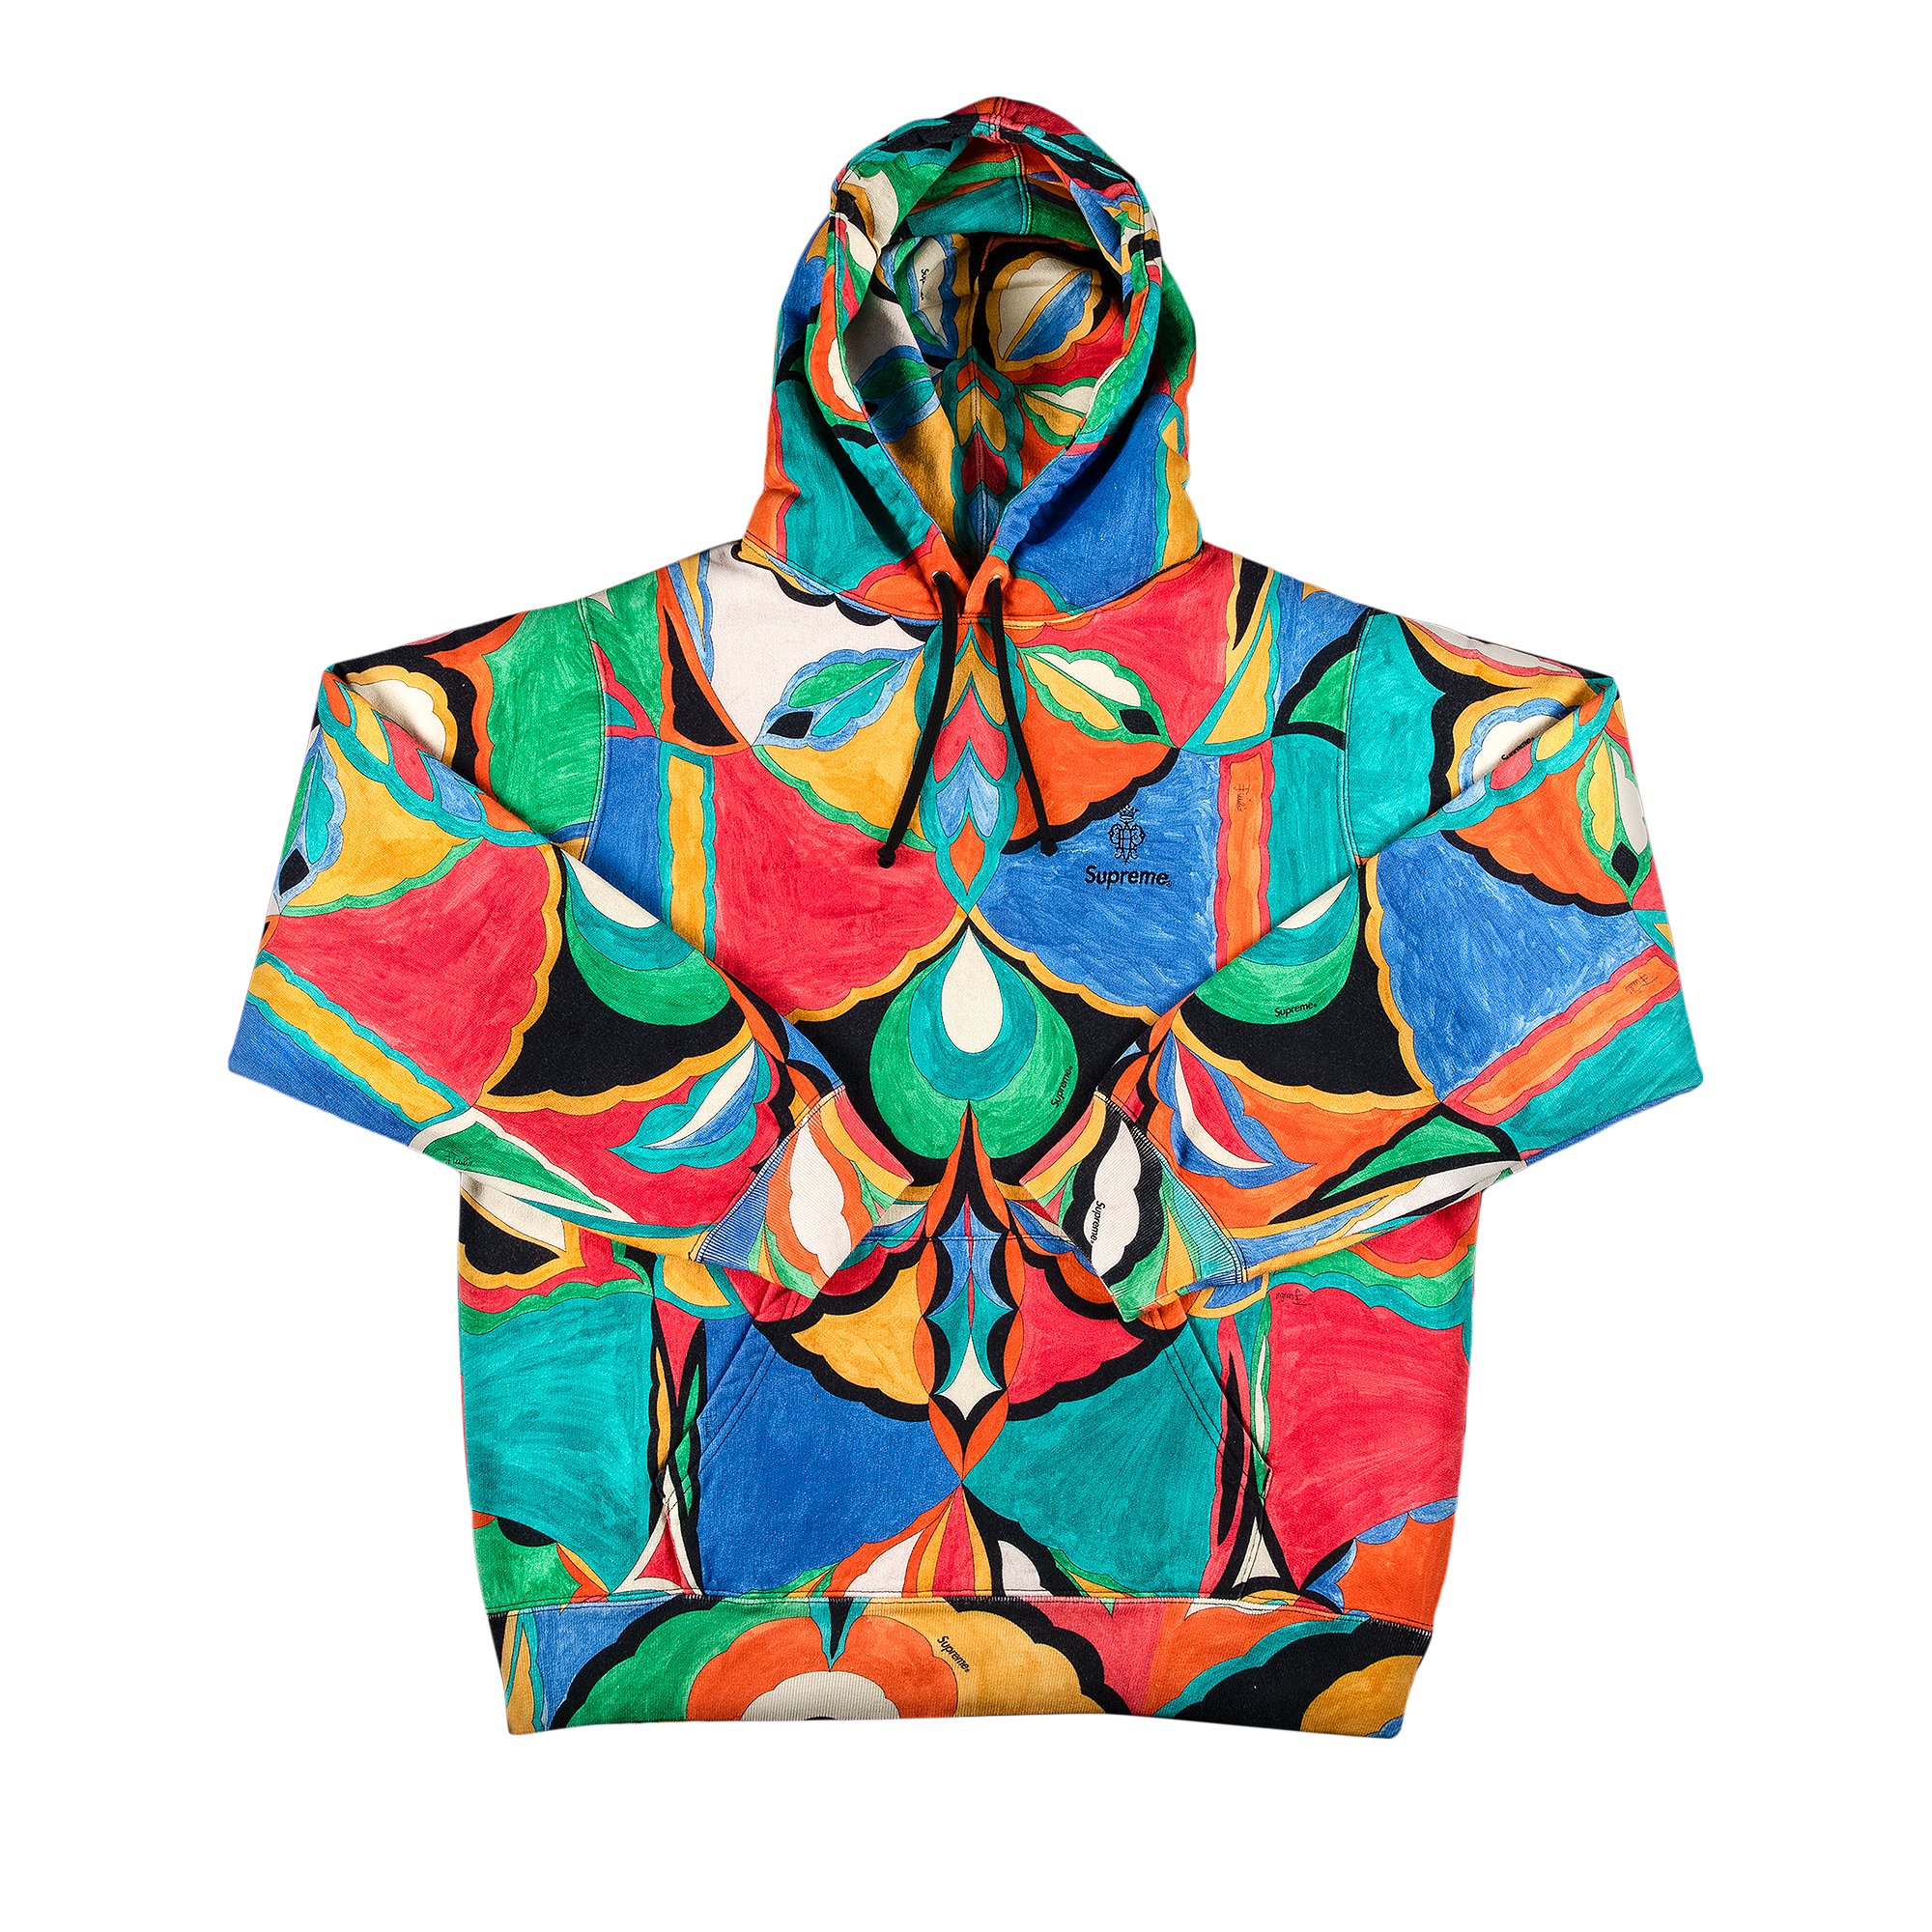 Buy Supreme x Emilio Pucci Hooded Sweatshirt 'Multicolor